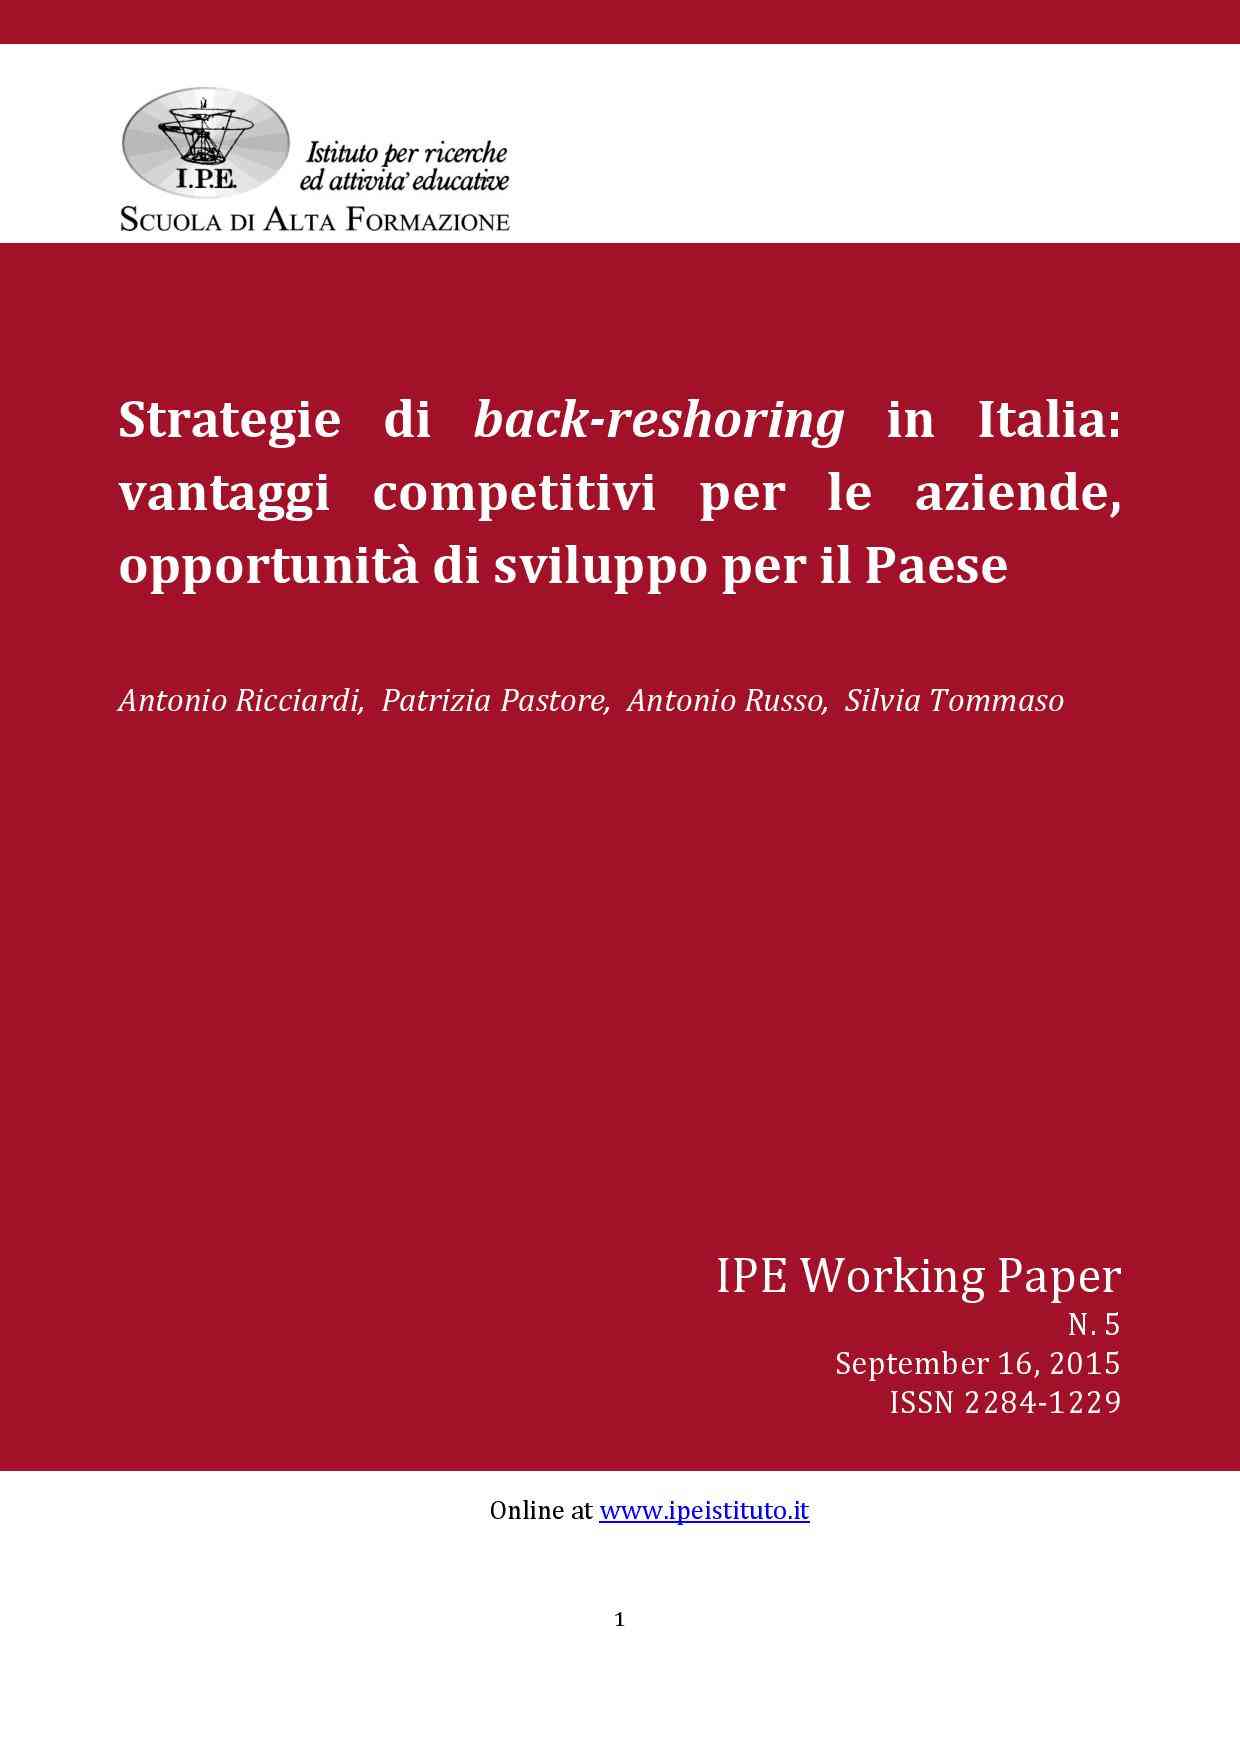 IPE Working Paper N.5/2015